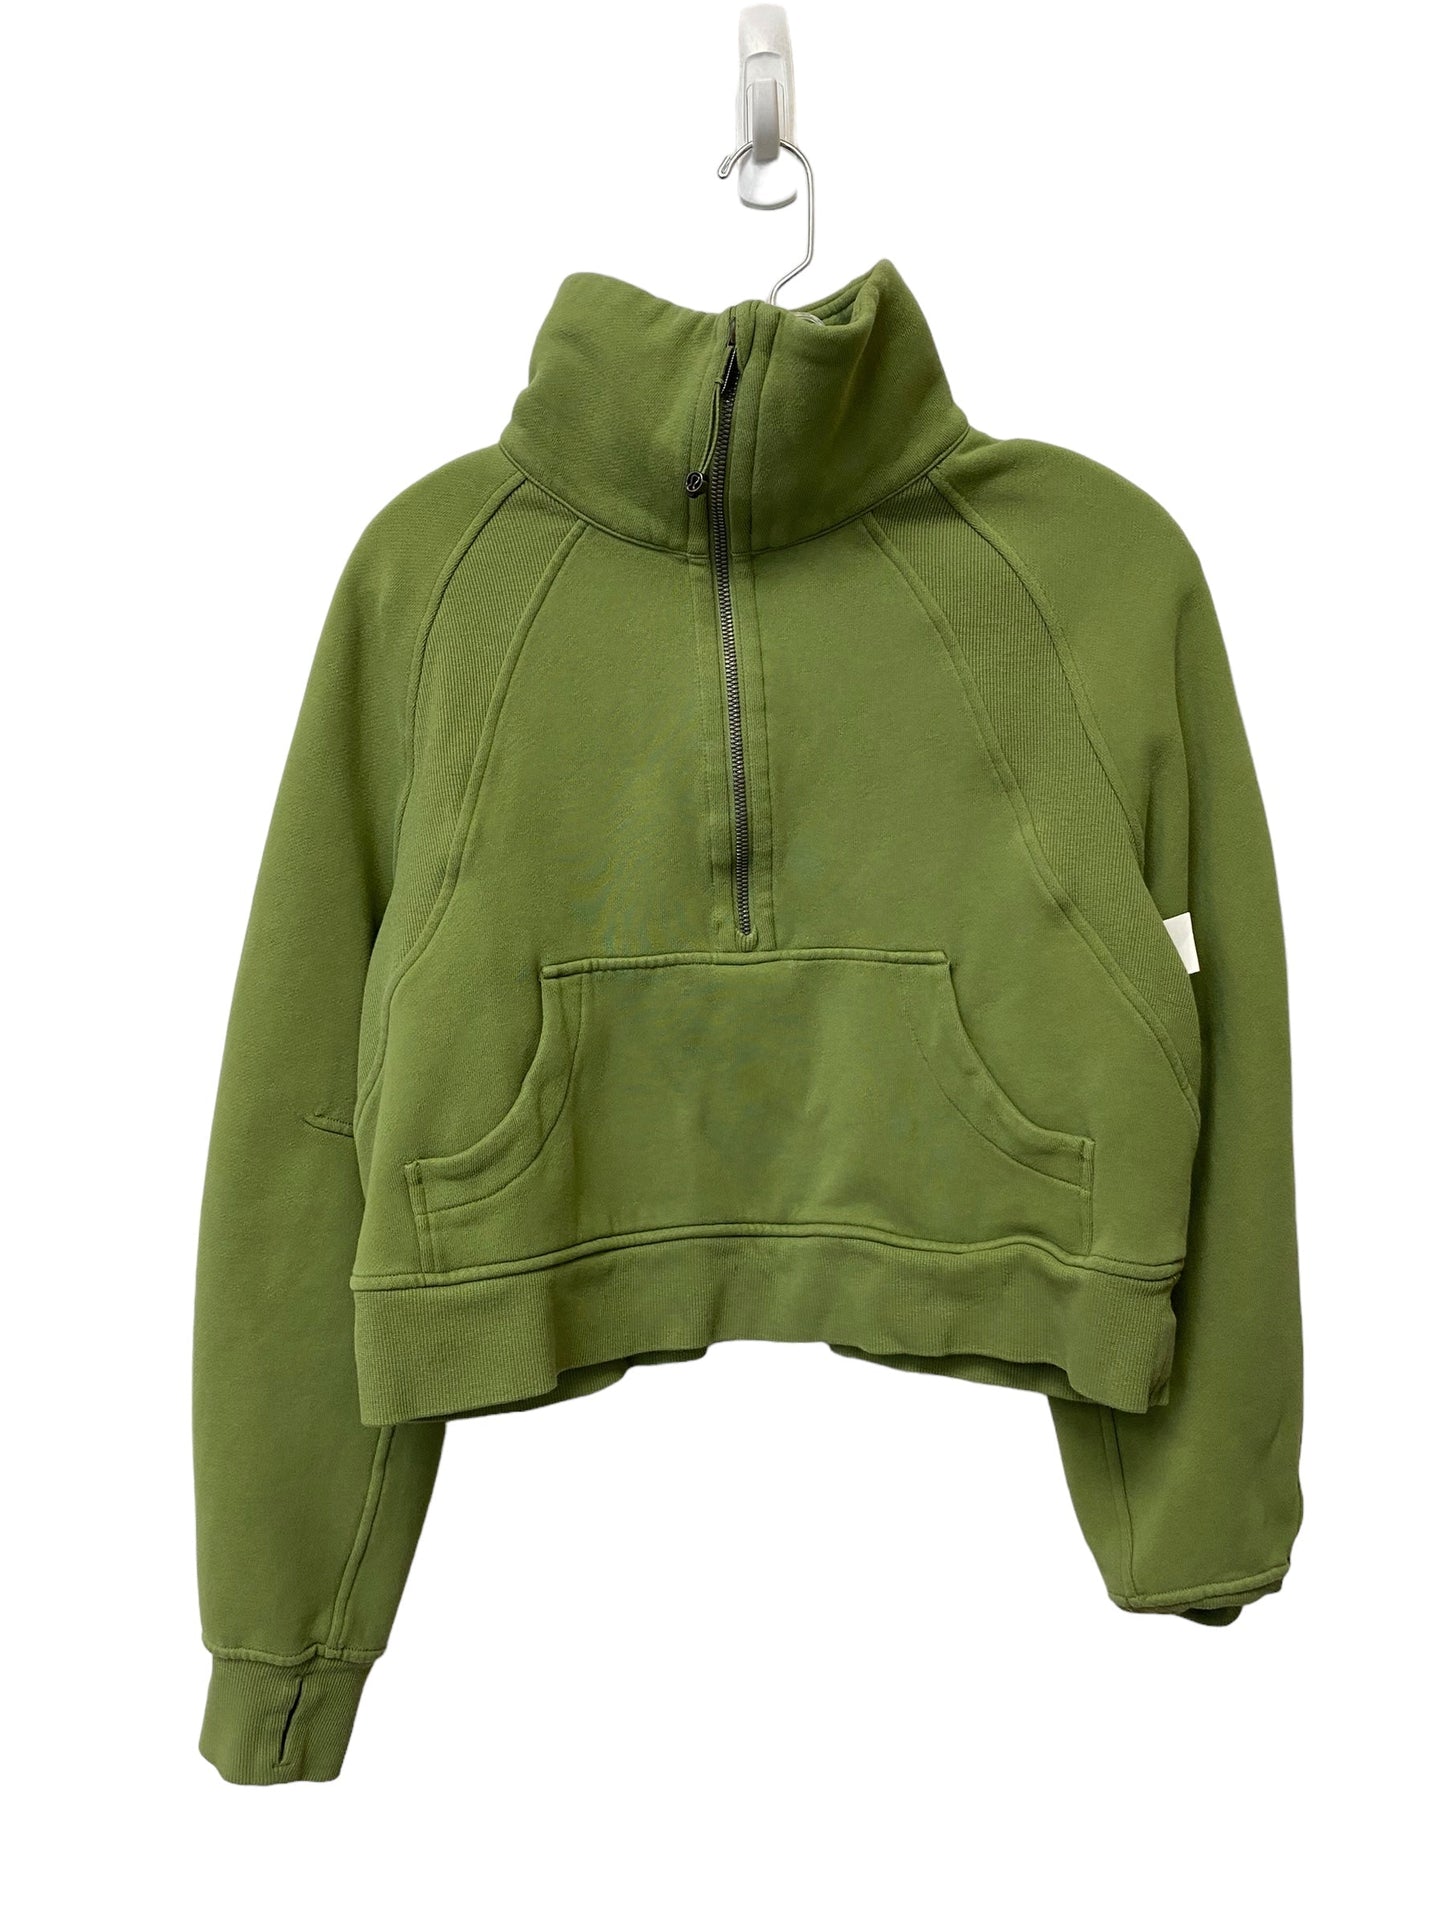 Green Athletic Jacket Lululemon, Size Xs